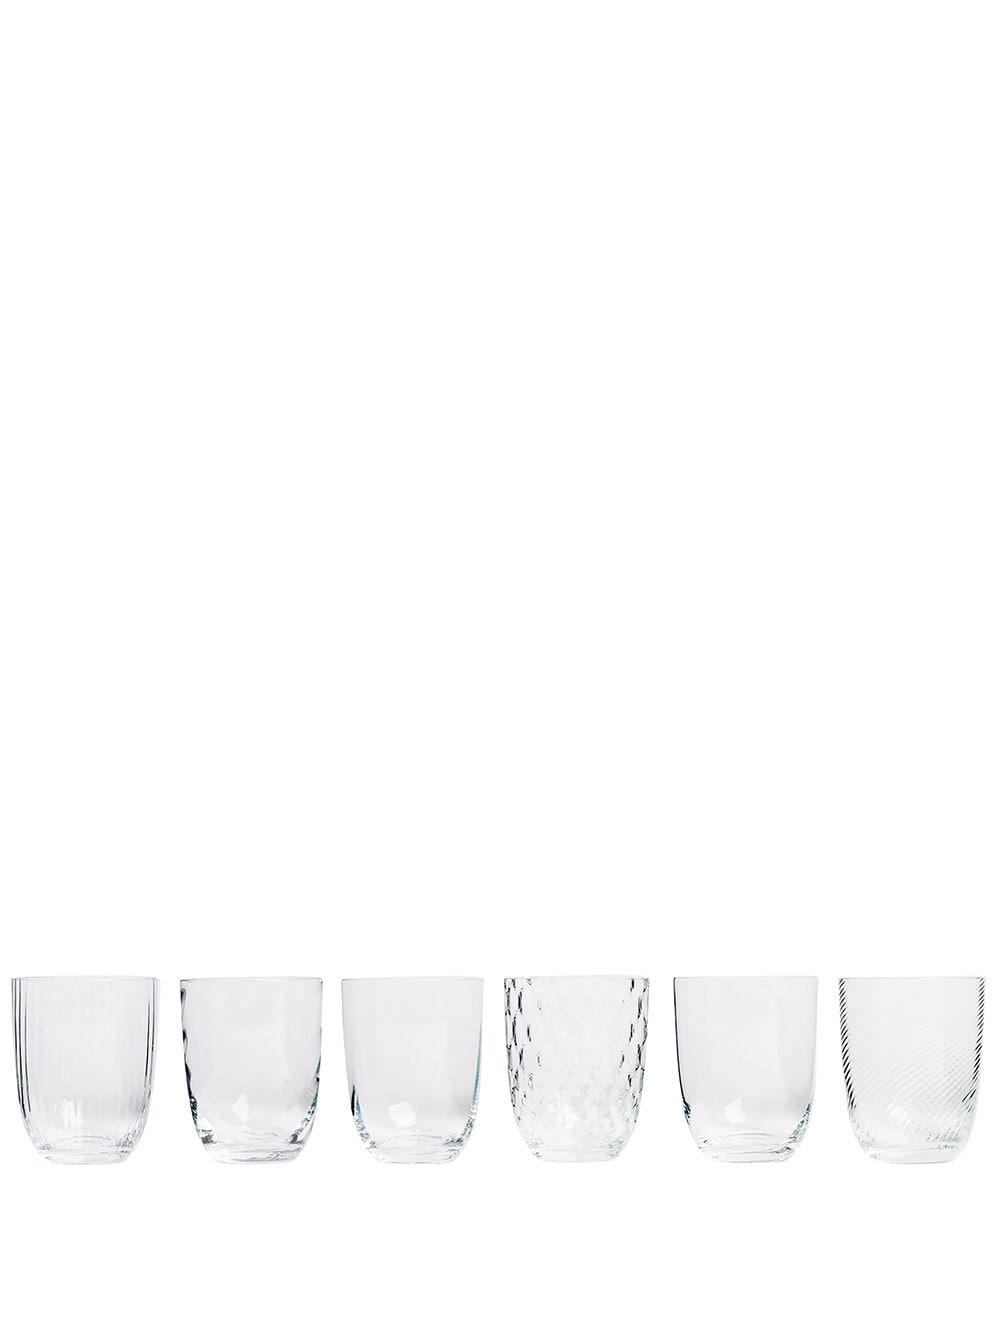 NasonMoretti Idra water glass - set of six - Neutrals von NasonMoretti